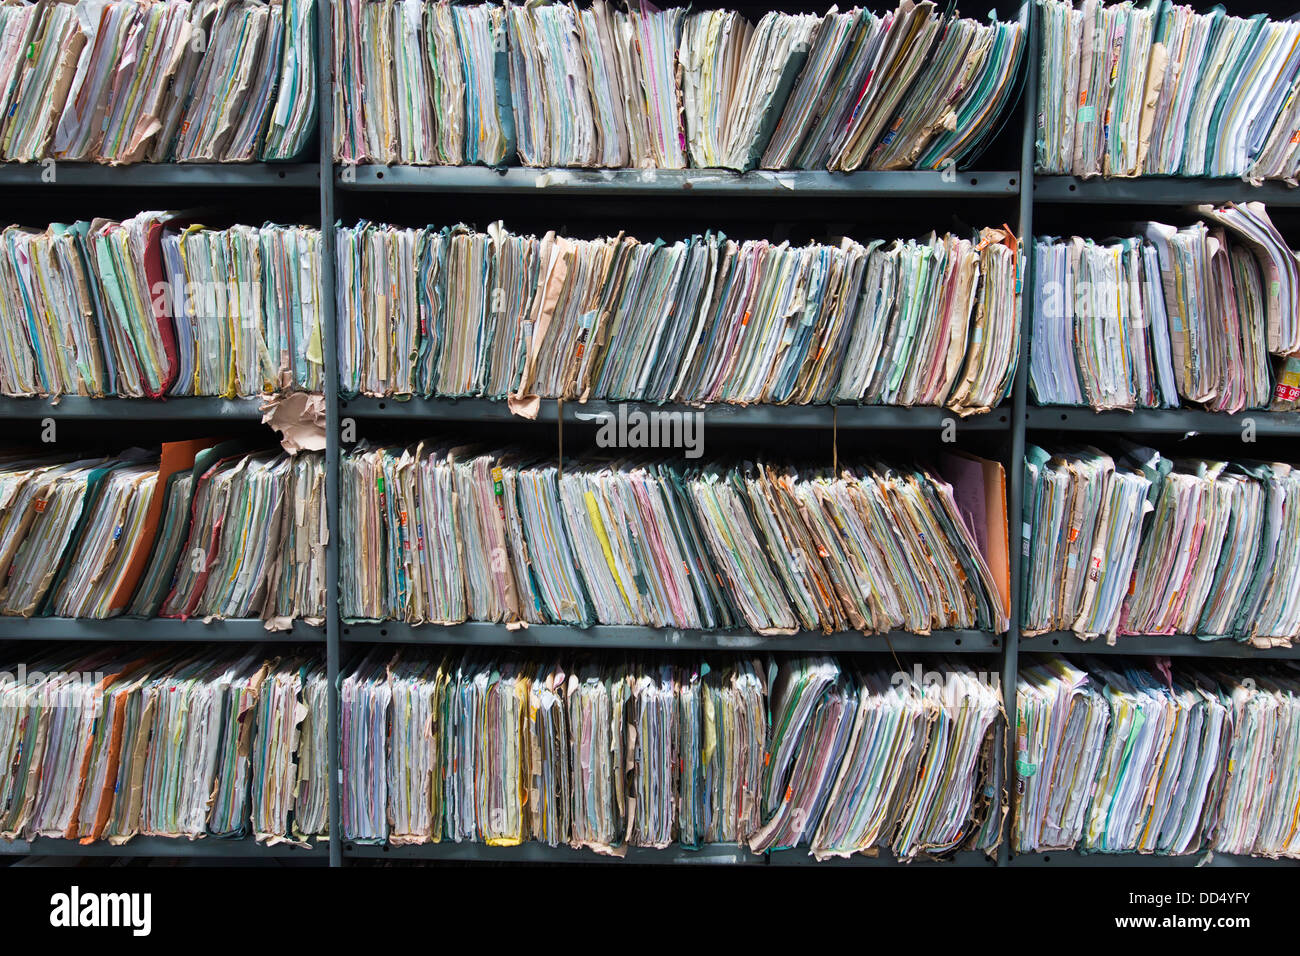 Regale im Lager gefüllt mit Office Papiere, Ordner und Dateien, die jetzt an die digitale Speicherung transkribiert worden. Stockfoto